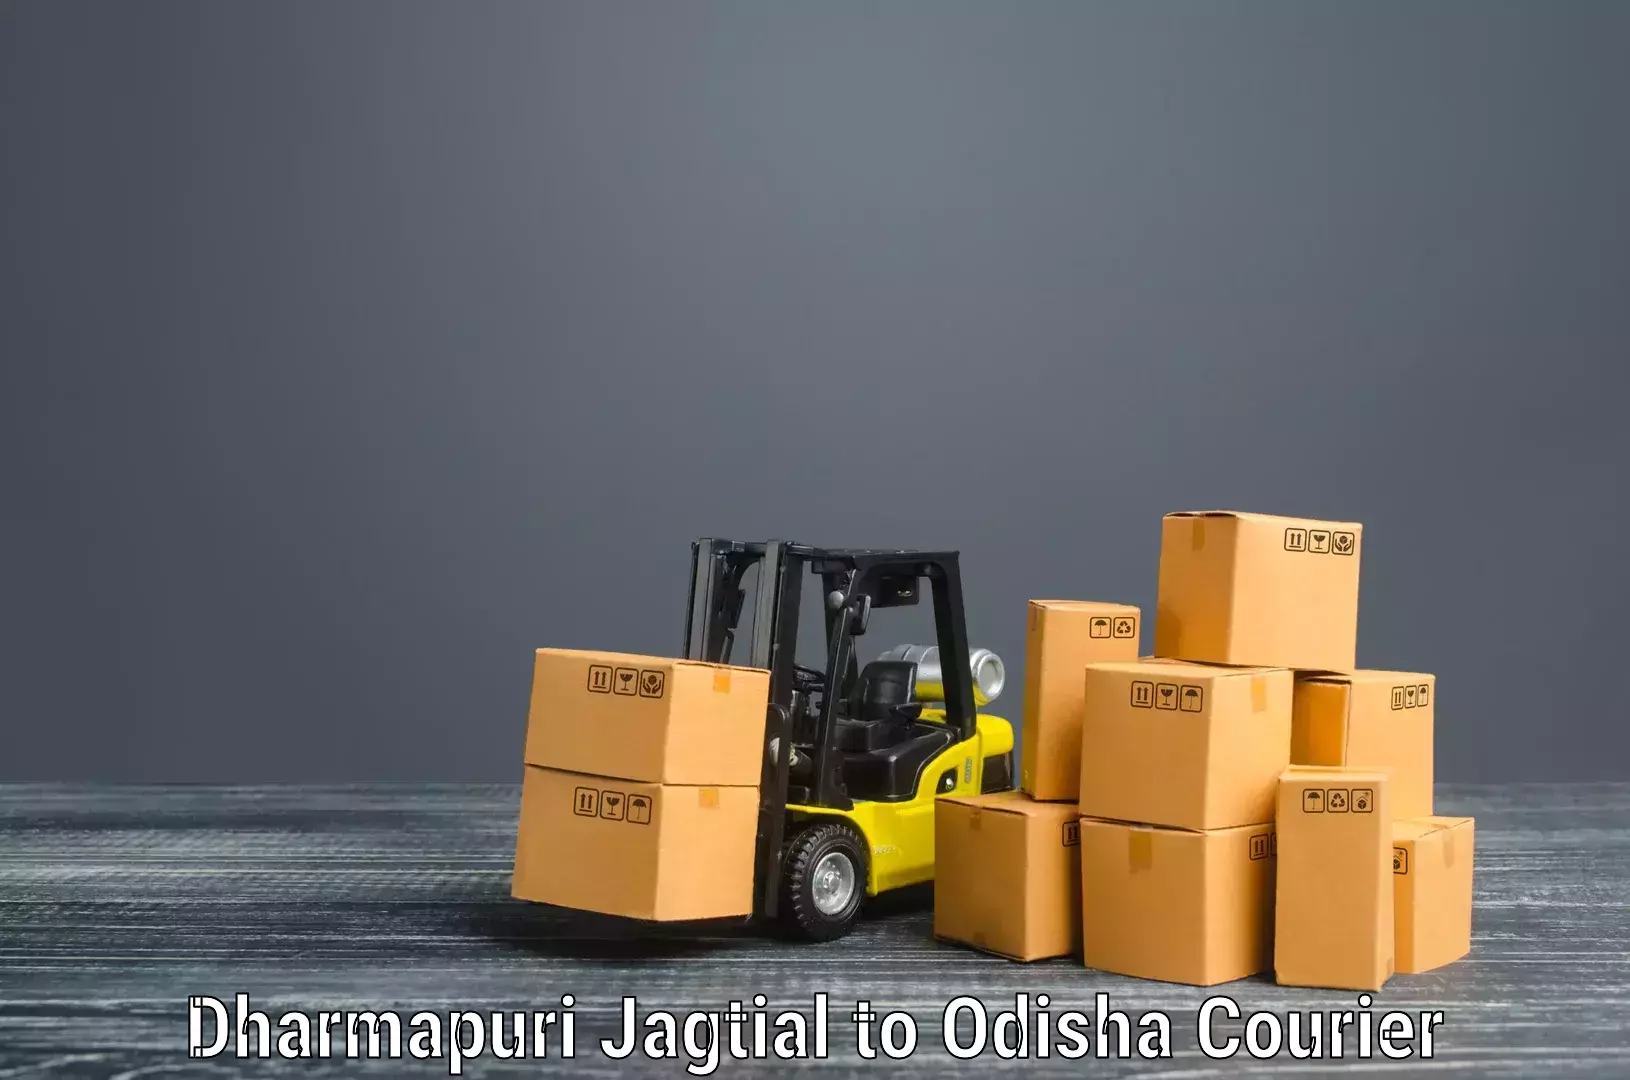 Full-service movers Dharmapuri Jagtial to Jaipatna